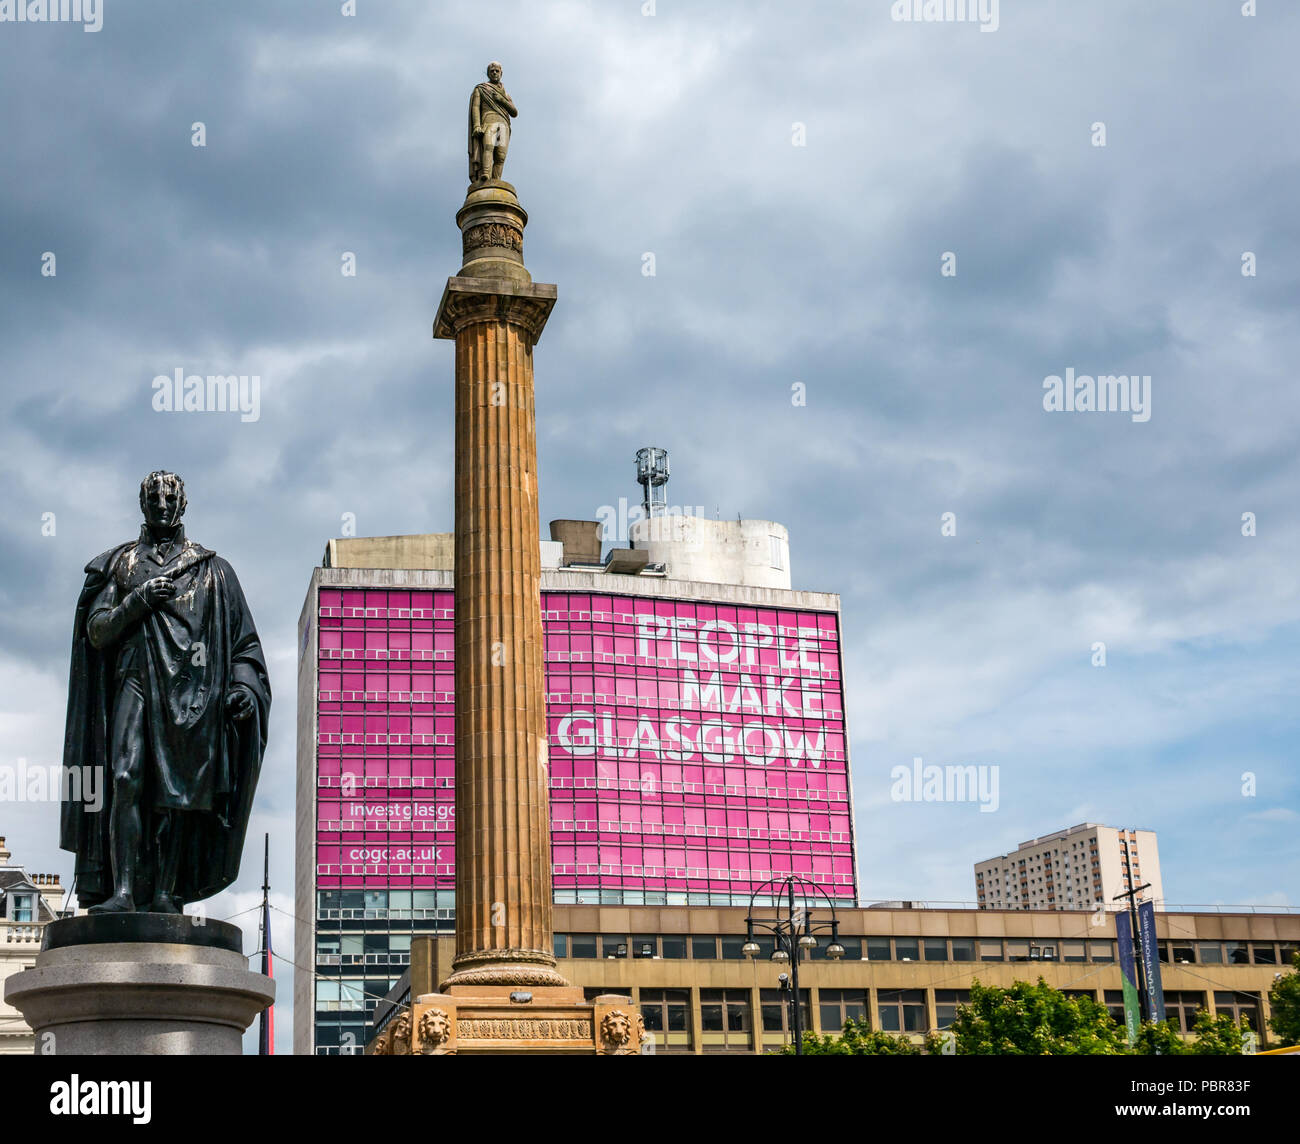 Sir John Moore Statue, Sir Walter Scott memorial Spalte und rosa Menschen machen Glasgow Anzeige und stürmischen Himmel, George Square, Glasgow, Schottland, Großbritannien Stockfoto